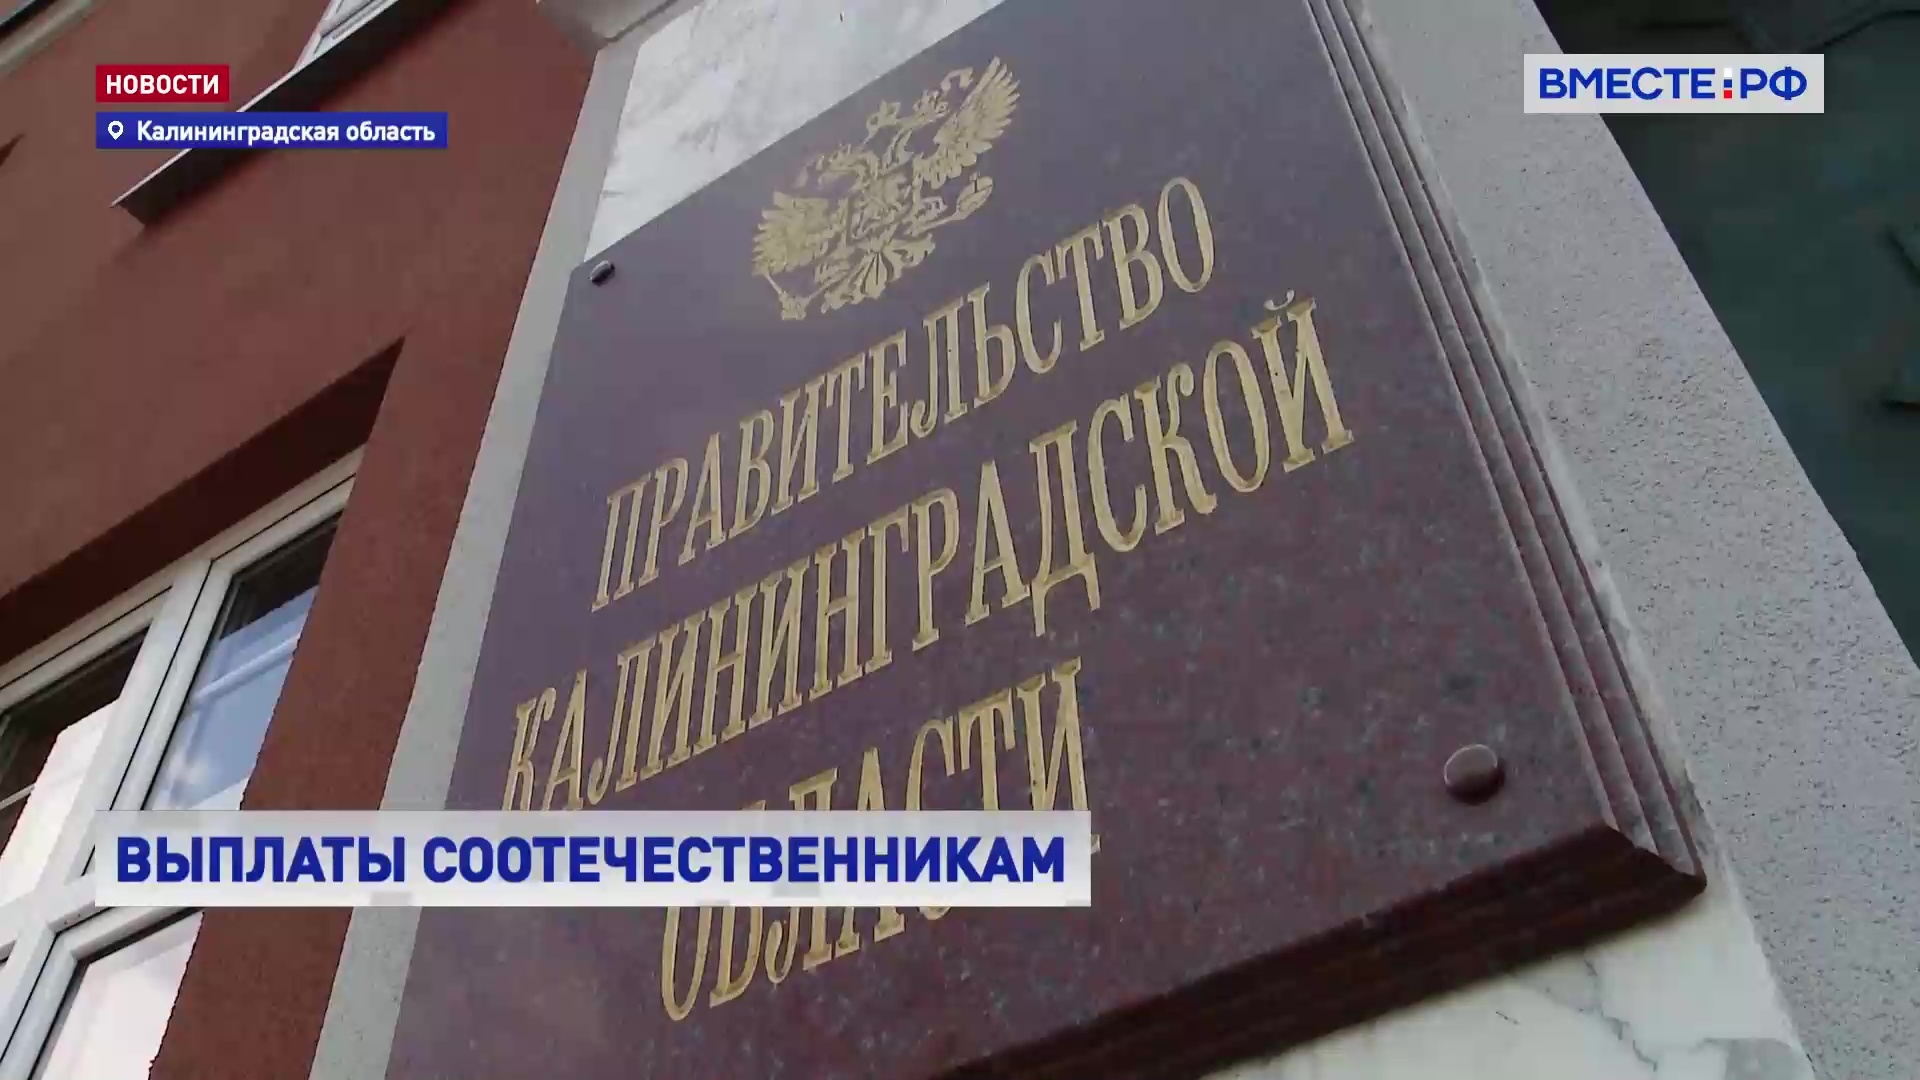 Соотечественники, которые захотят переехать из-за рубежа в Калининградскую область, получат разовую выплату в 32 тыс руб